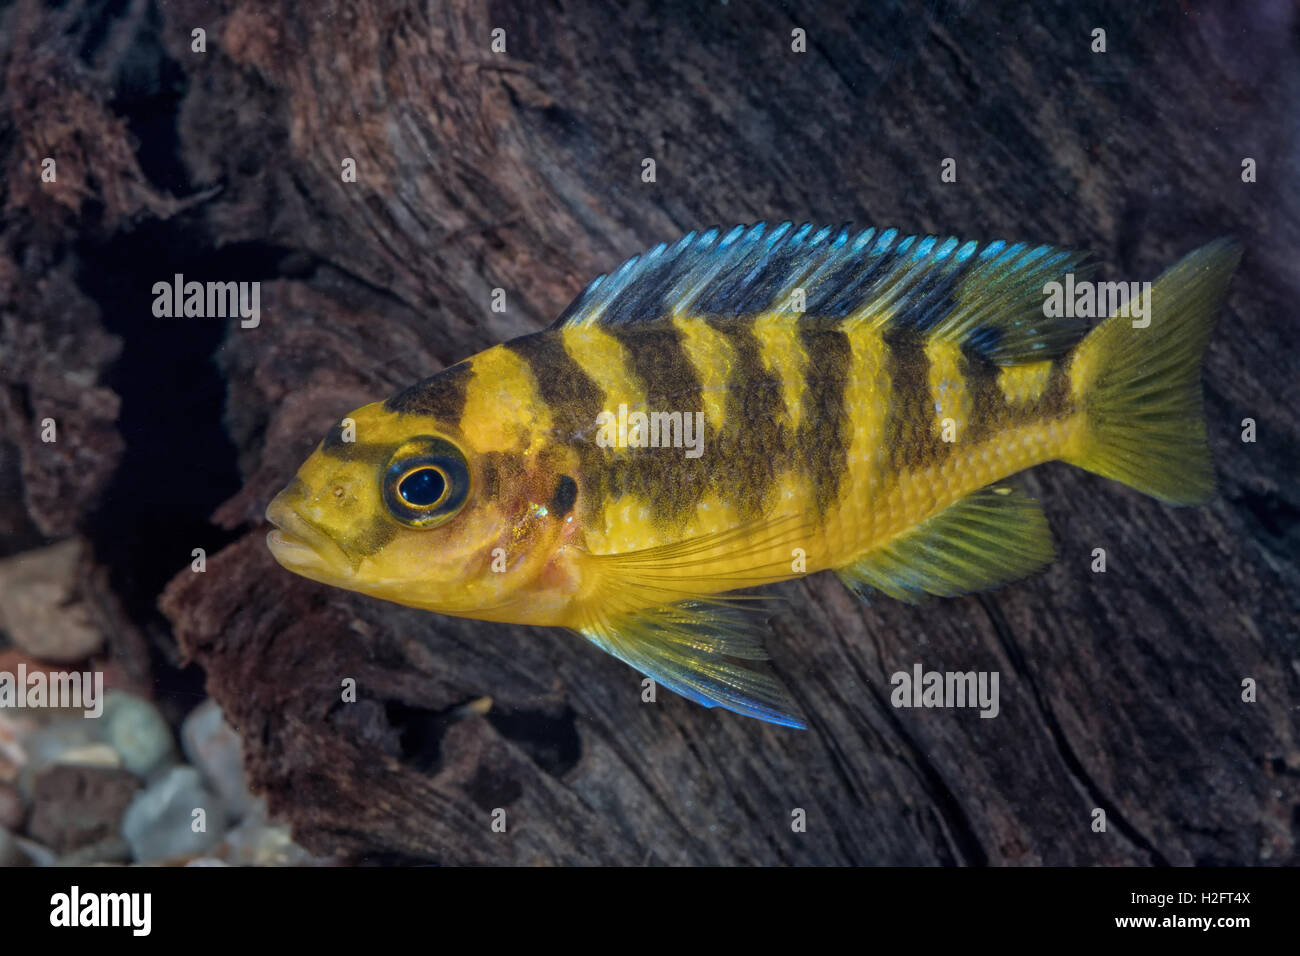 Portrait of freshwater cichlid fish (Pseudotropheus crabro) in aquarium Stock Photo